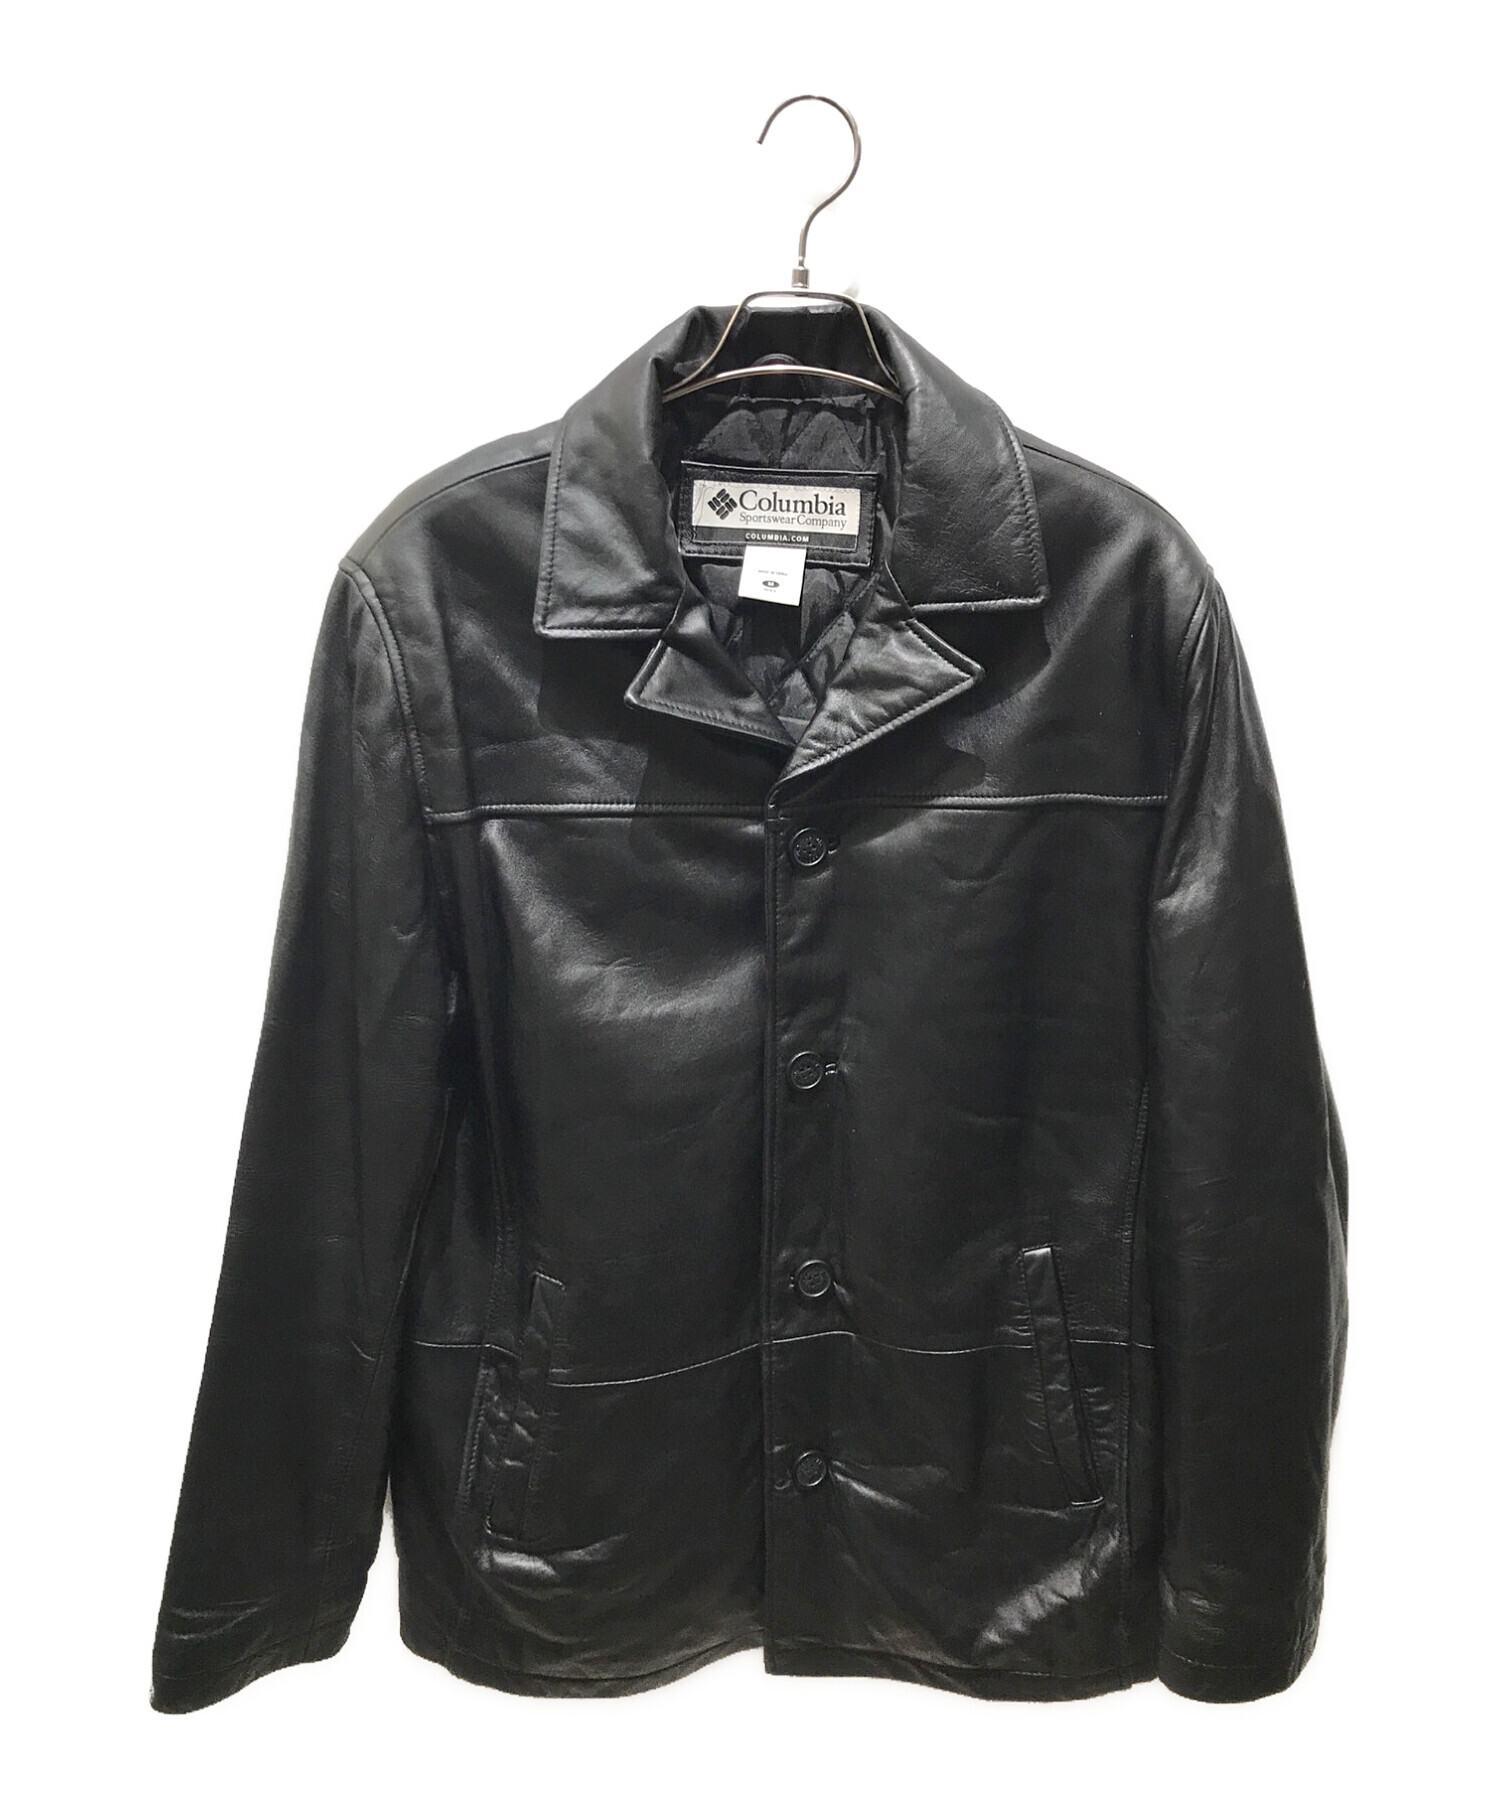 Columbia Leather jacket  レザーミリタリージャケットRYRのメンズアイテム一覧